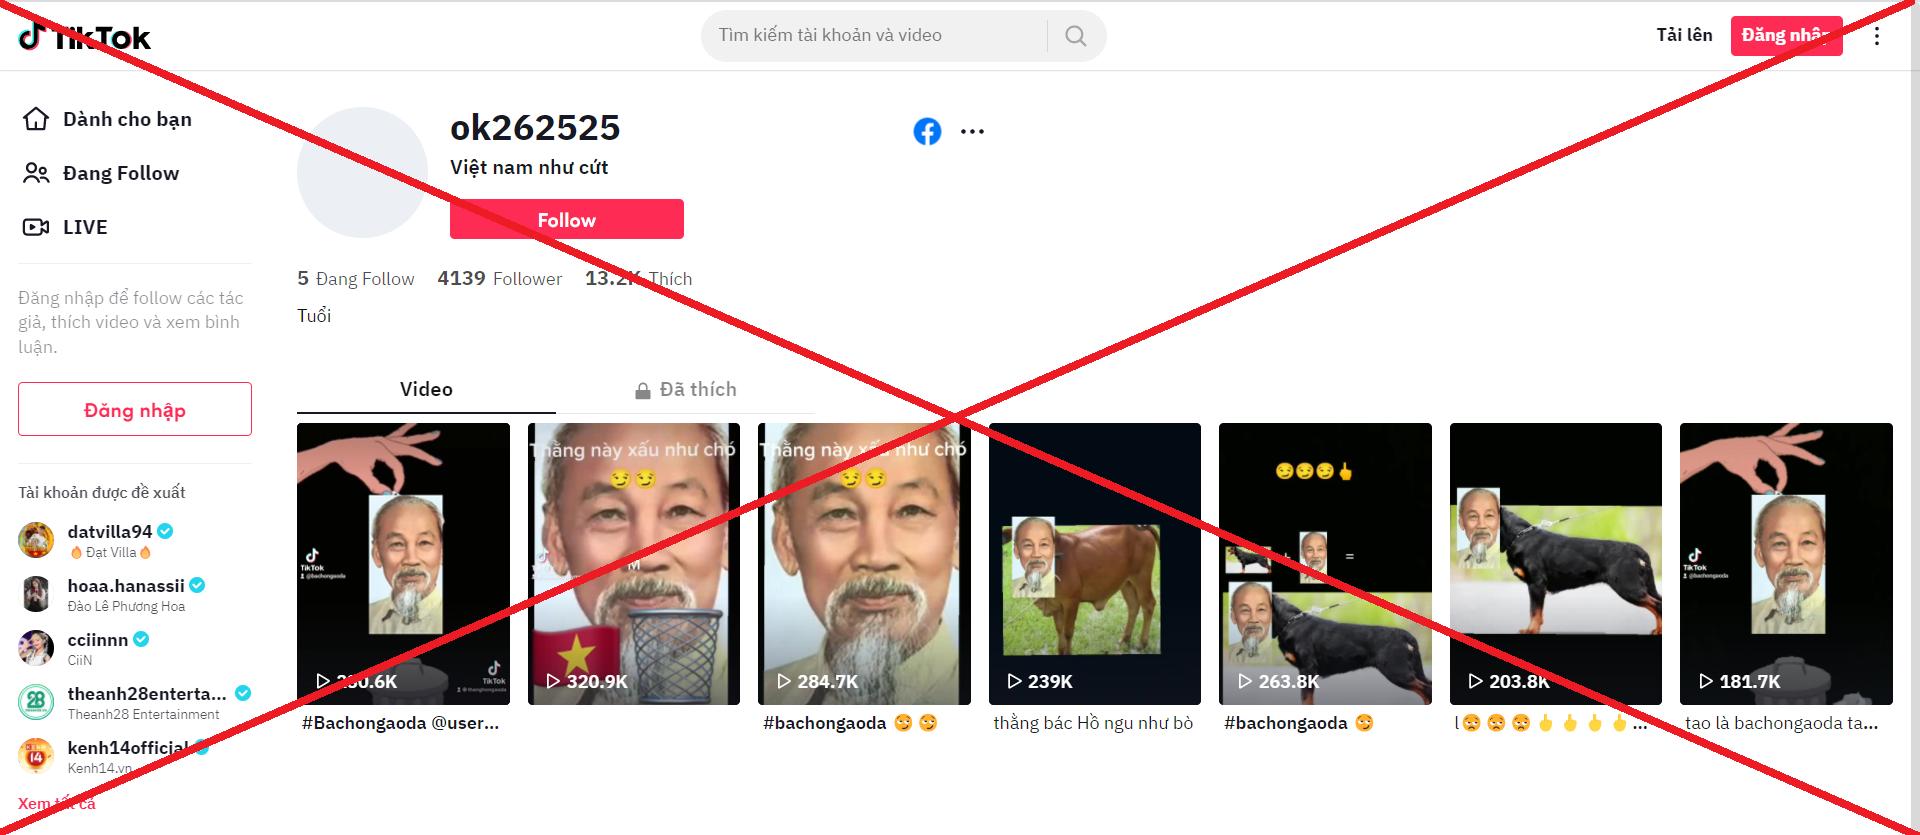 Tiktok xuất hiện một số tài khoản đăng tải nội dung có dấu hiệu xuyên tạc, xúc phạm hình ảnh Bác Hồ